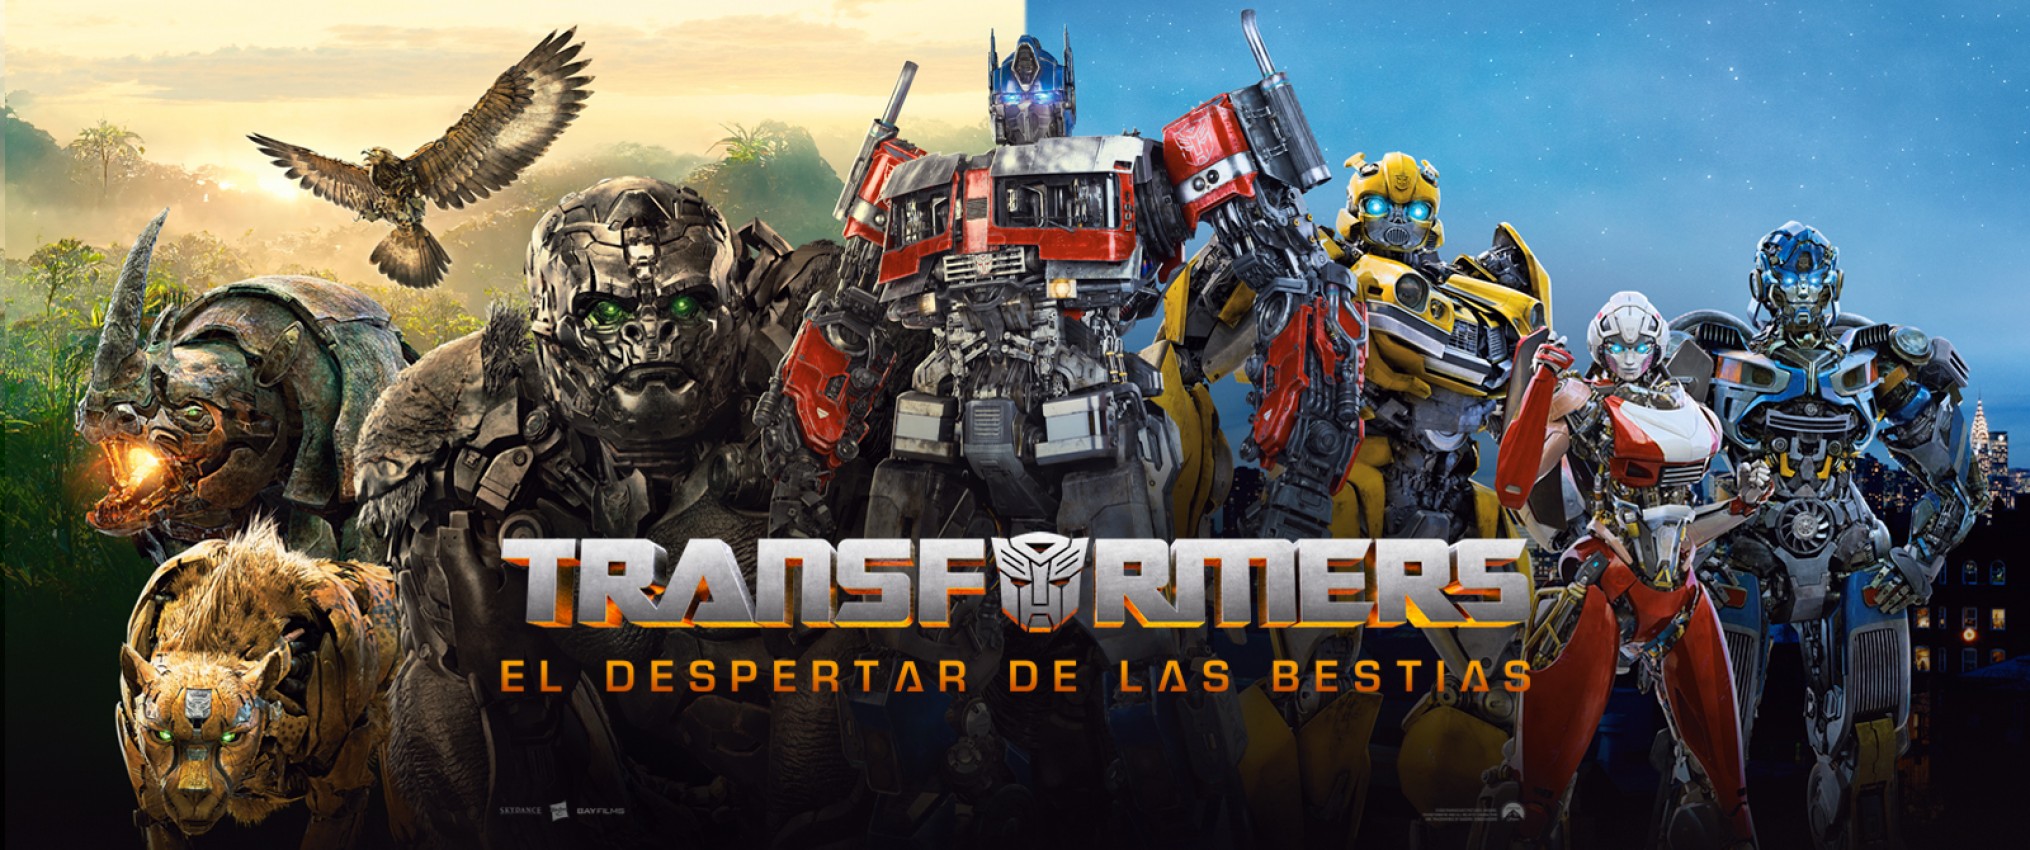 Todo Sobre Transformers El Despertar De Las Bestias Bumblebee En Hot Sex Picture 7837